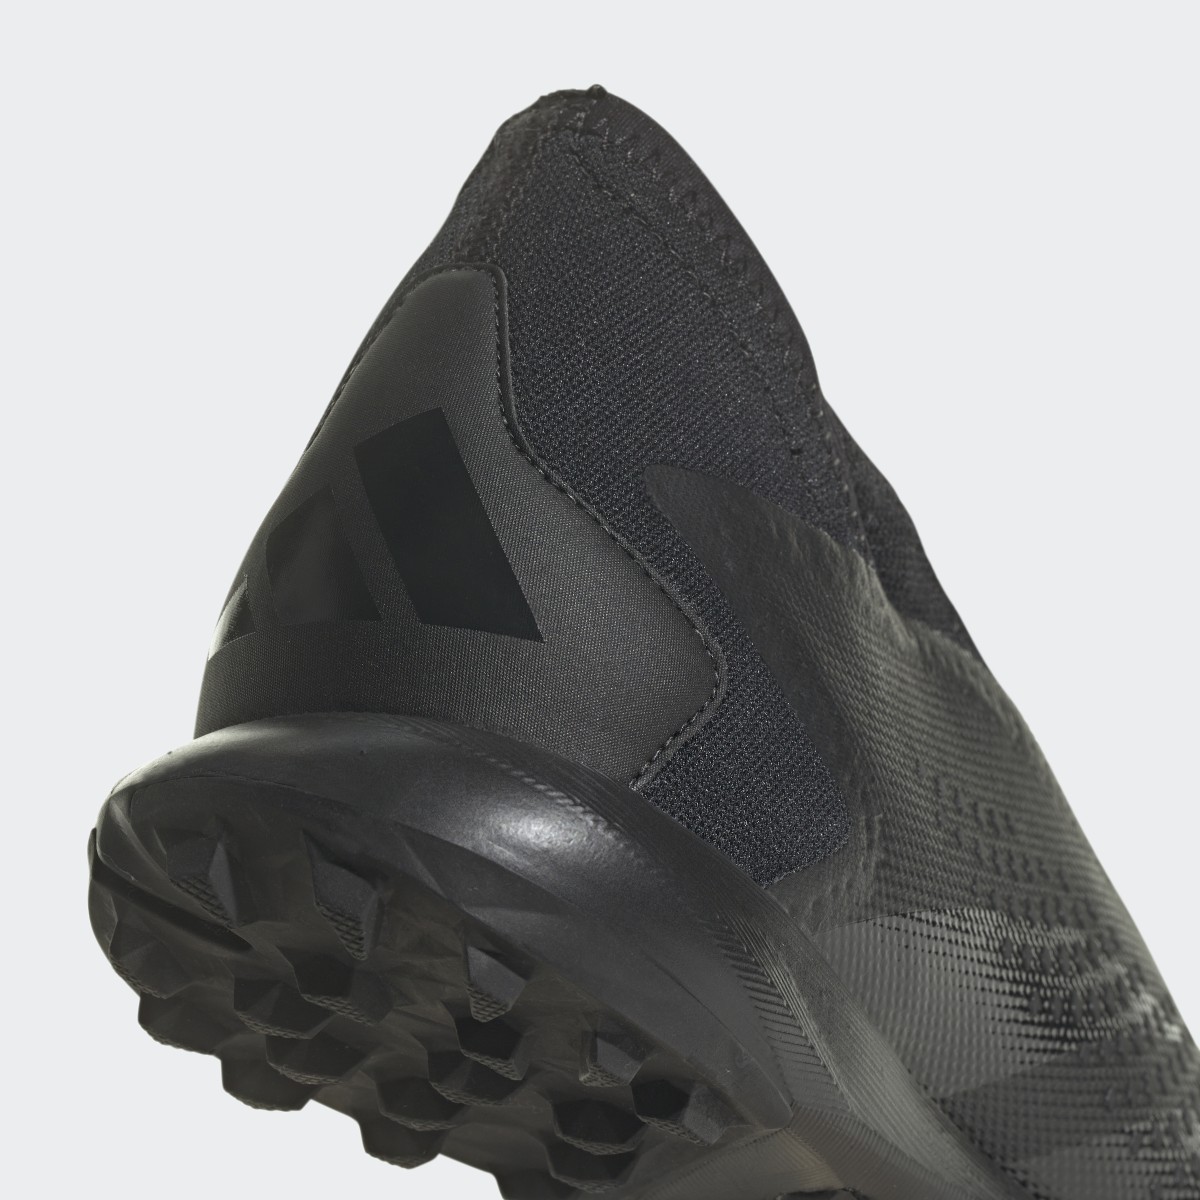 Adidas Zapatilla de fútbol Predator Accuracy.3 Laceless moqueta. 9